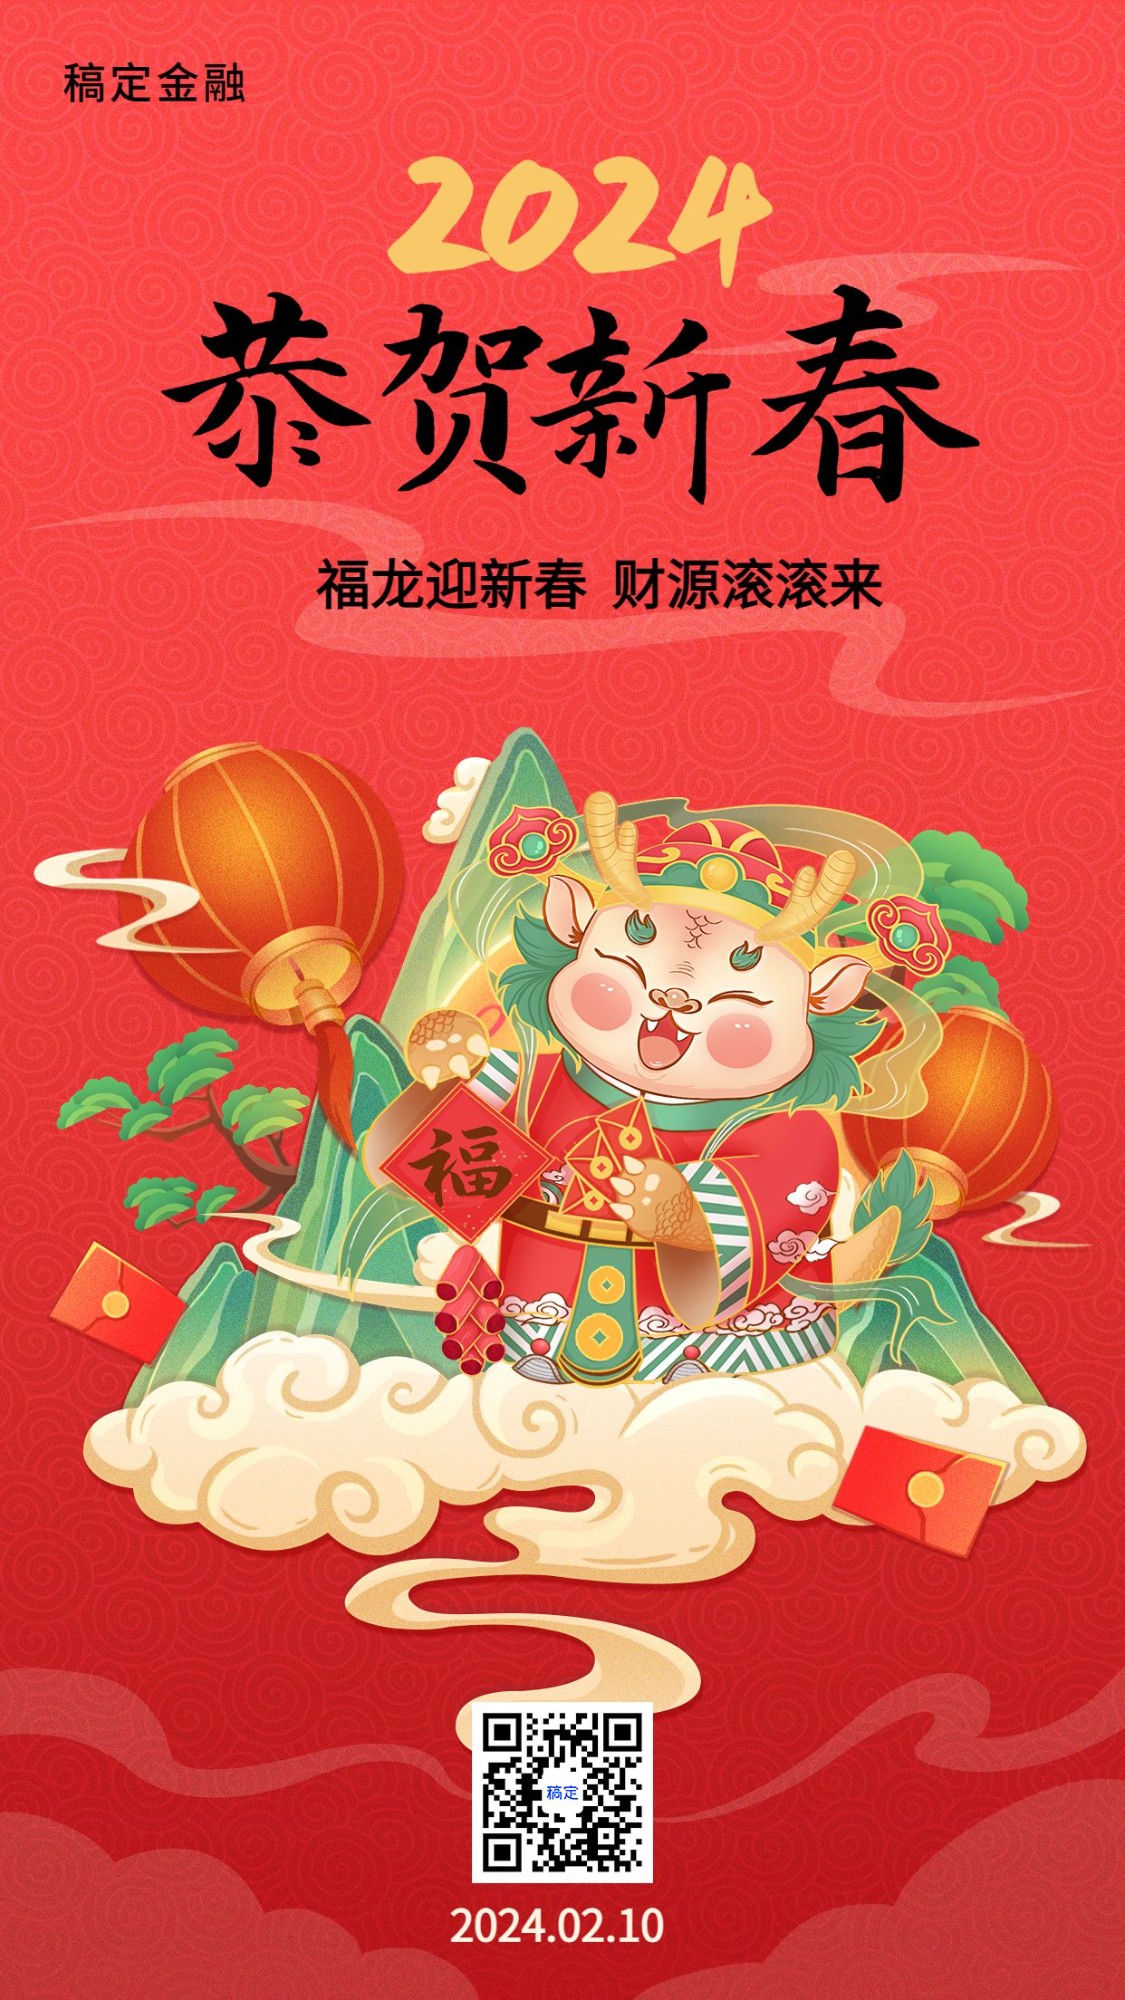 春节金融保险龙年节日祝福喜庆插画手机海报预览效果